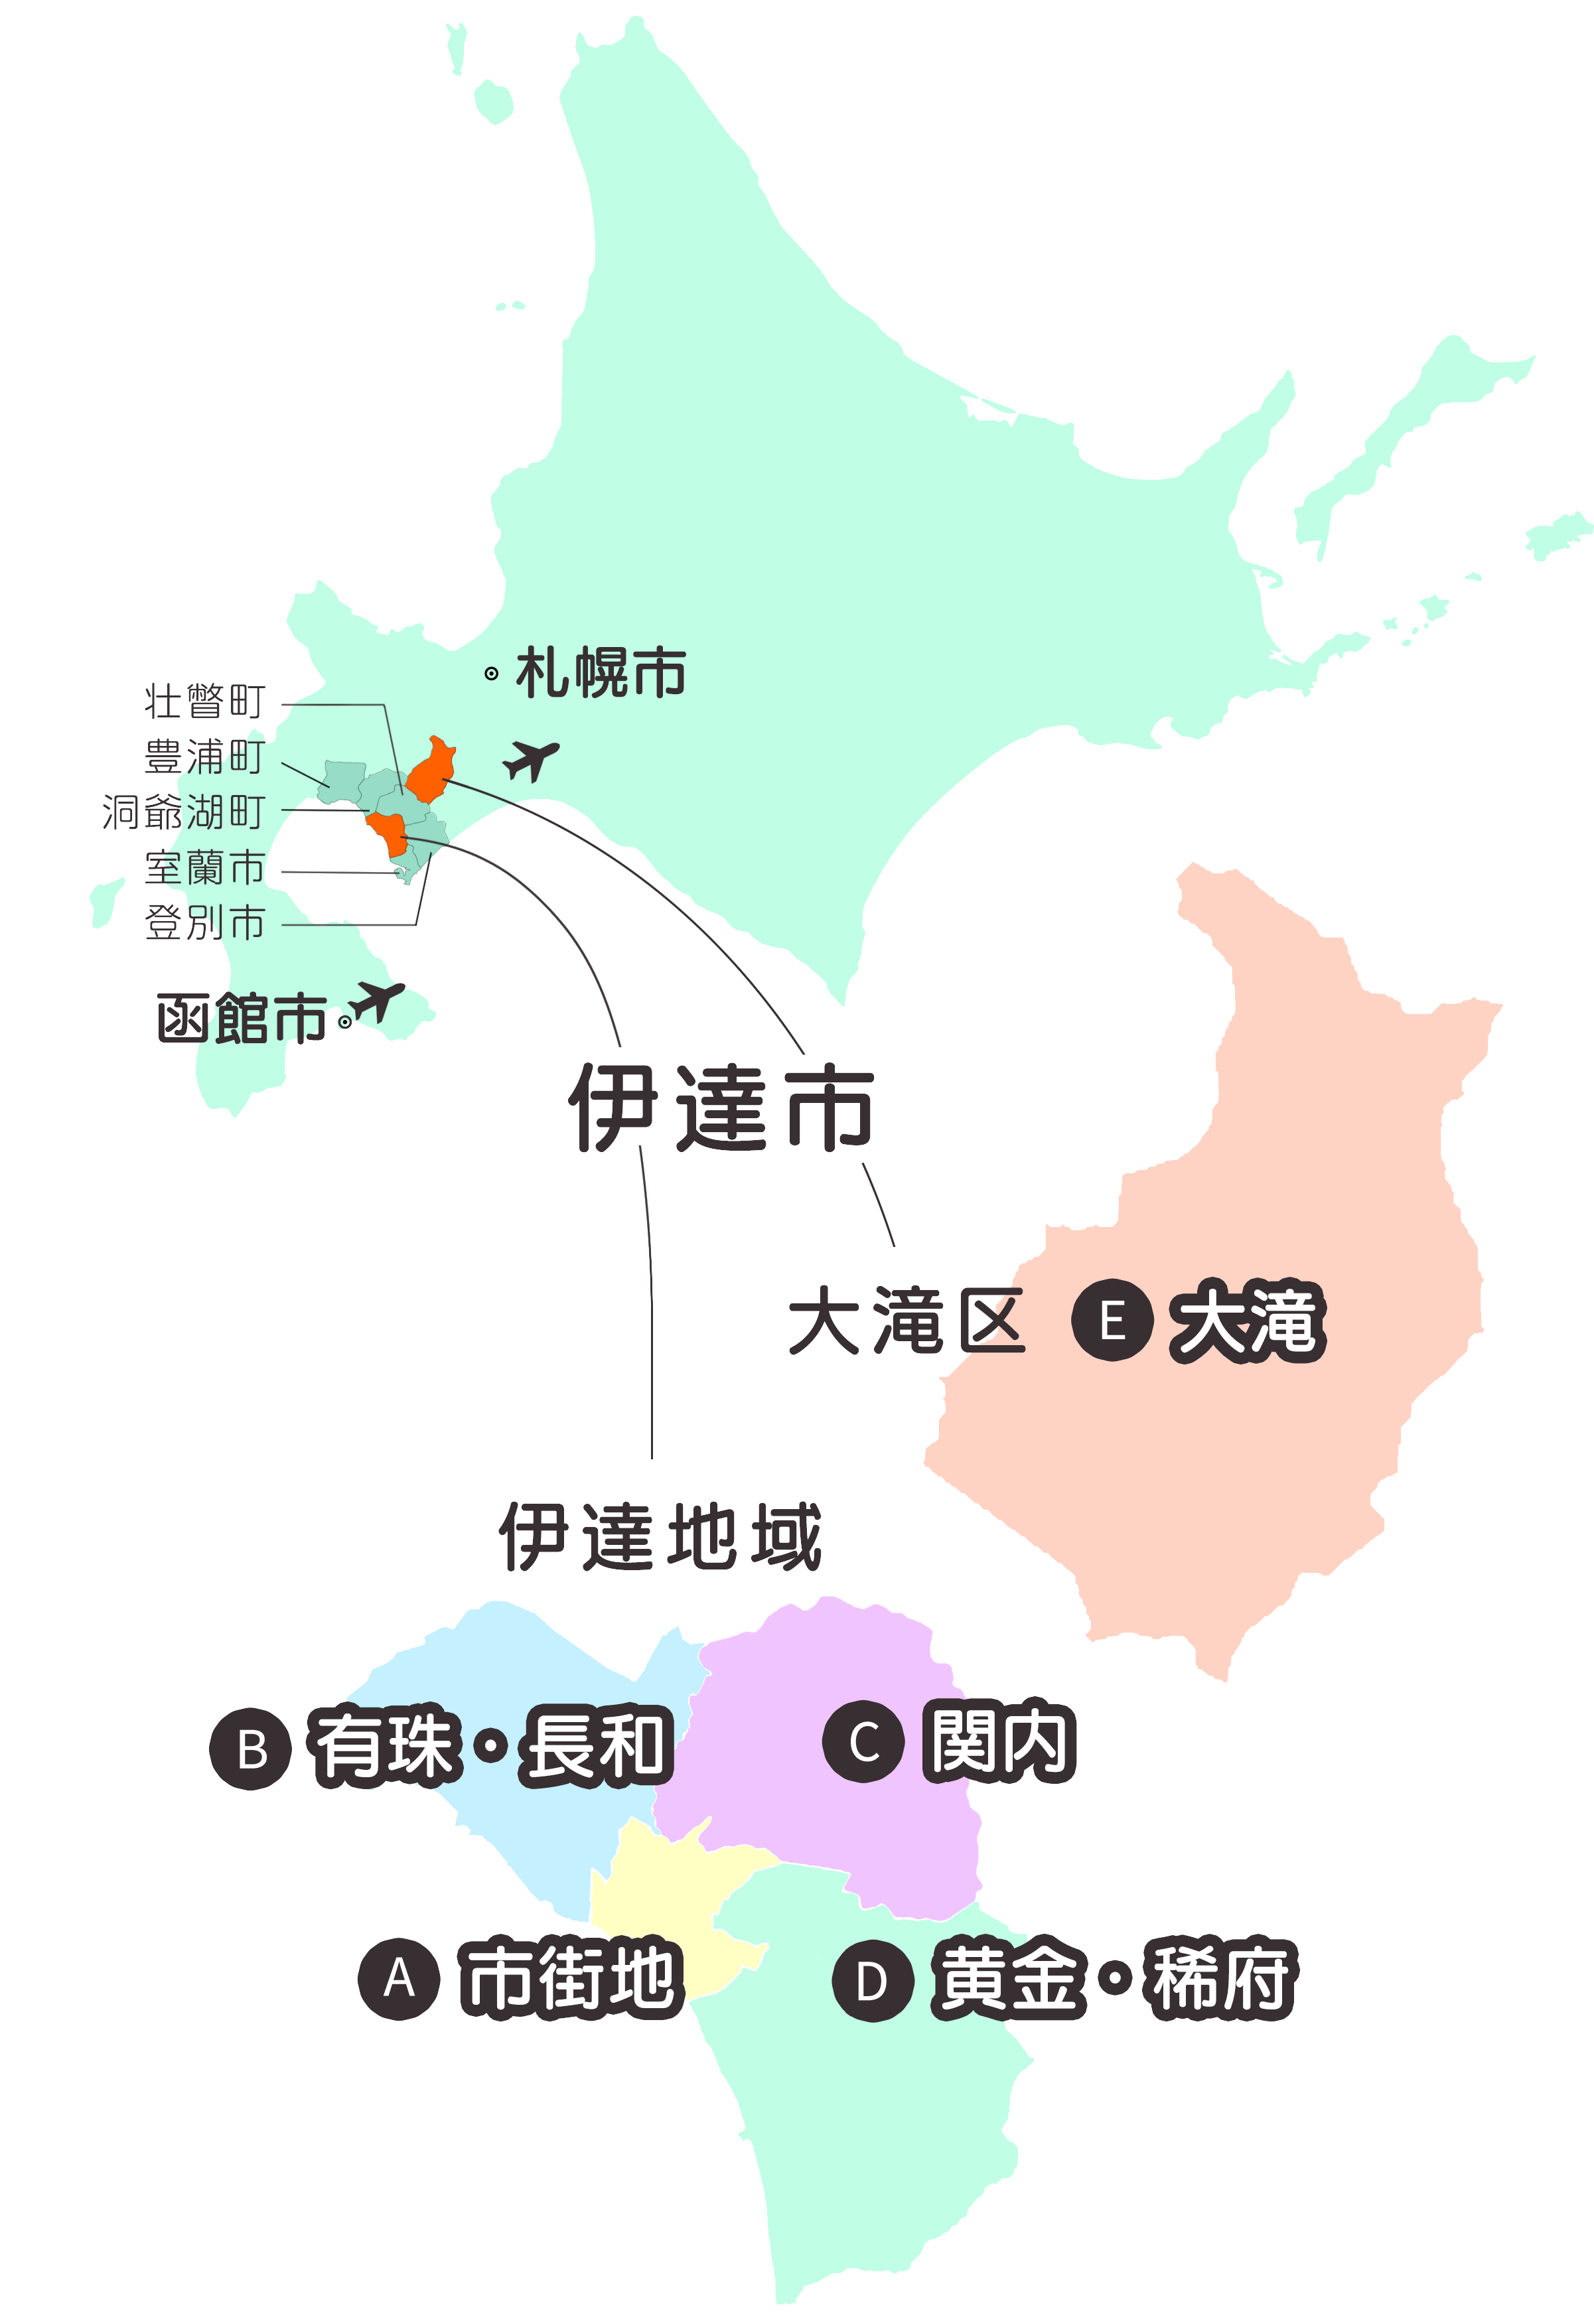 北海道内の北海道伊達市の位置を示す地図と伊達市をABCDEの5つに分けた地図